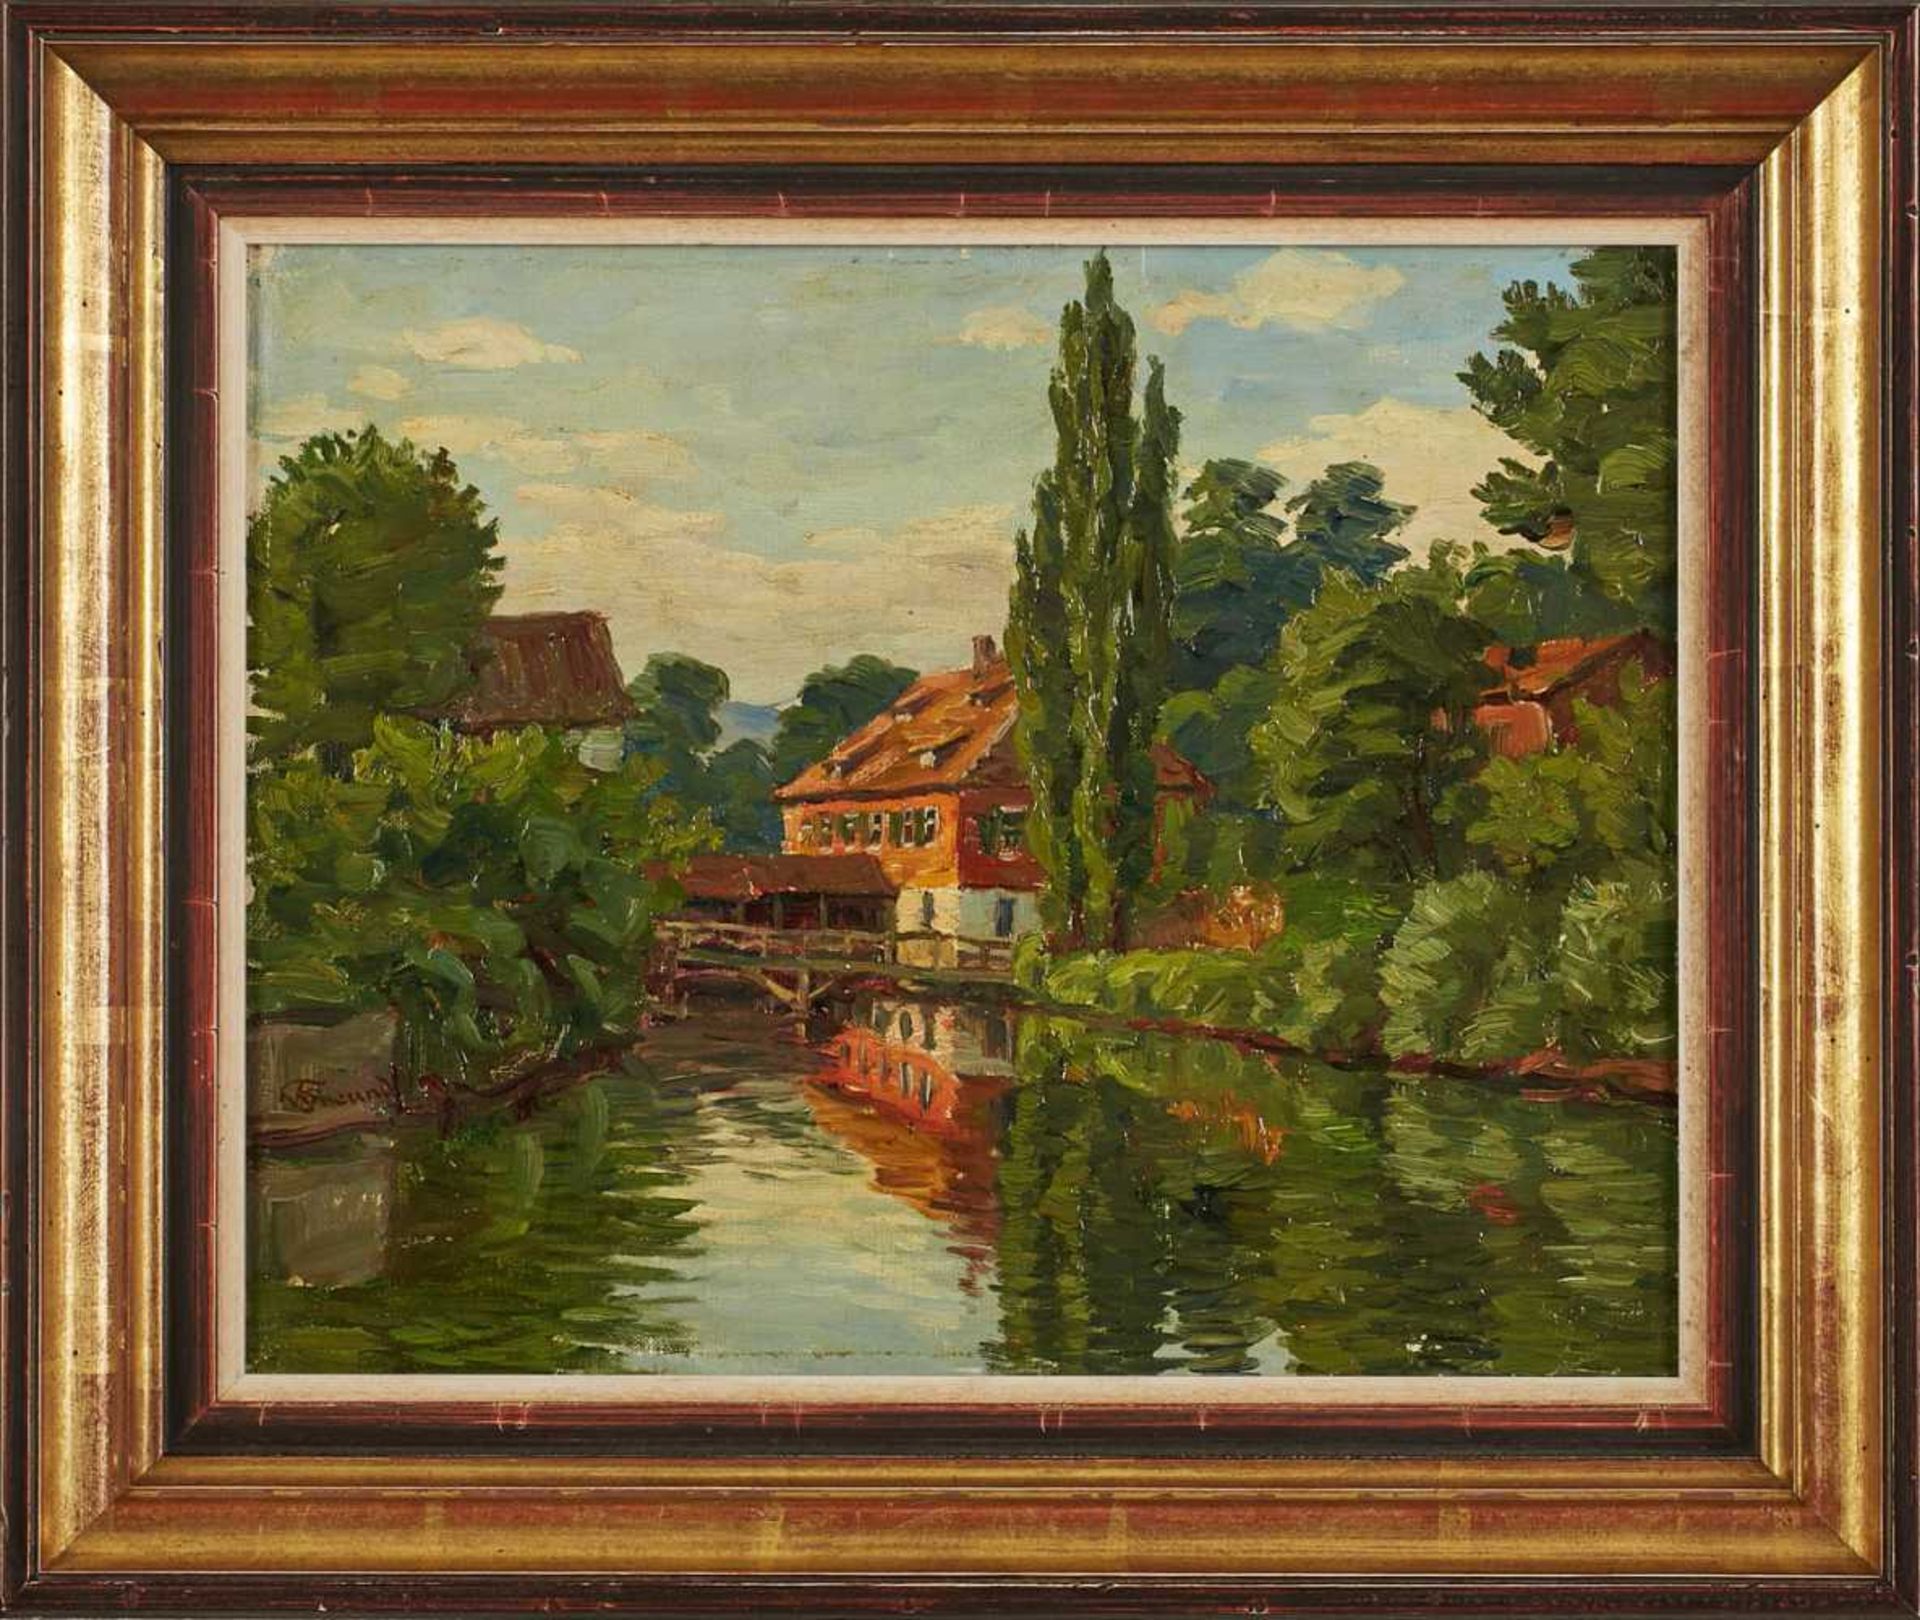 Gemälde Wilhelm Freund1860 Schönbach - 1936 Hohemark "An der Werra" u. li. sign. W. Freund Öl/Lwd.